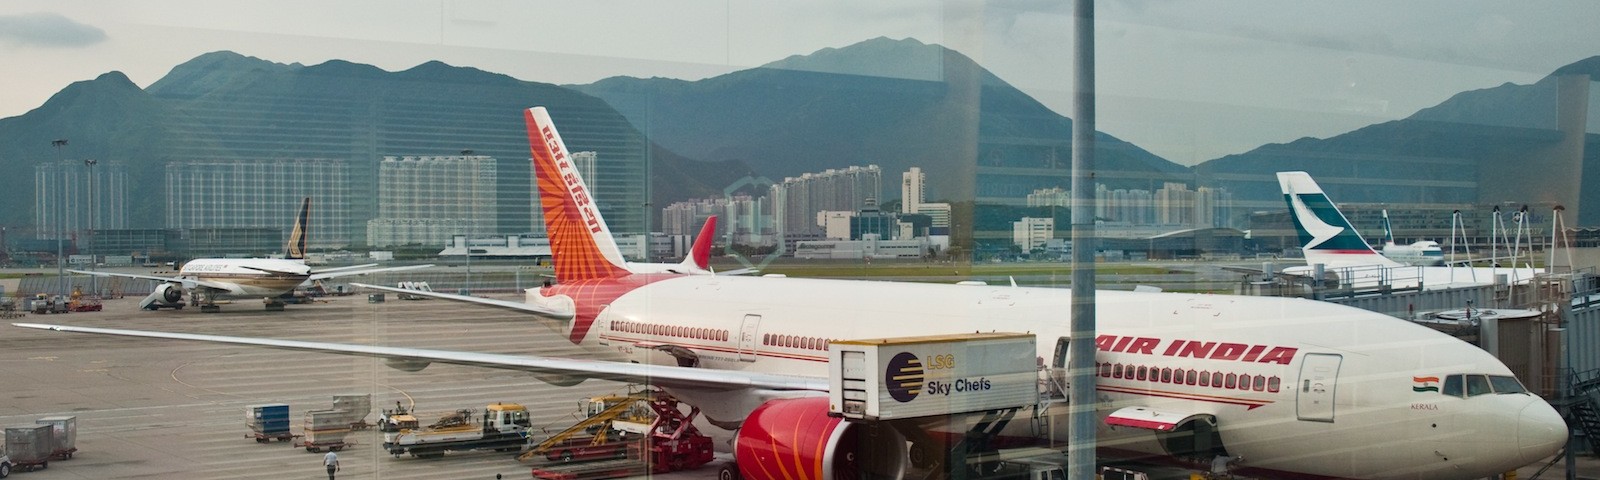 HK Airport 1600